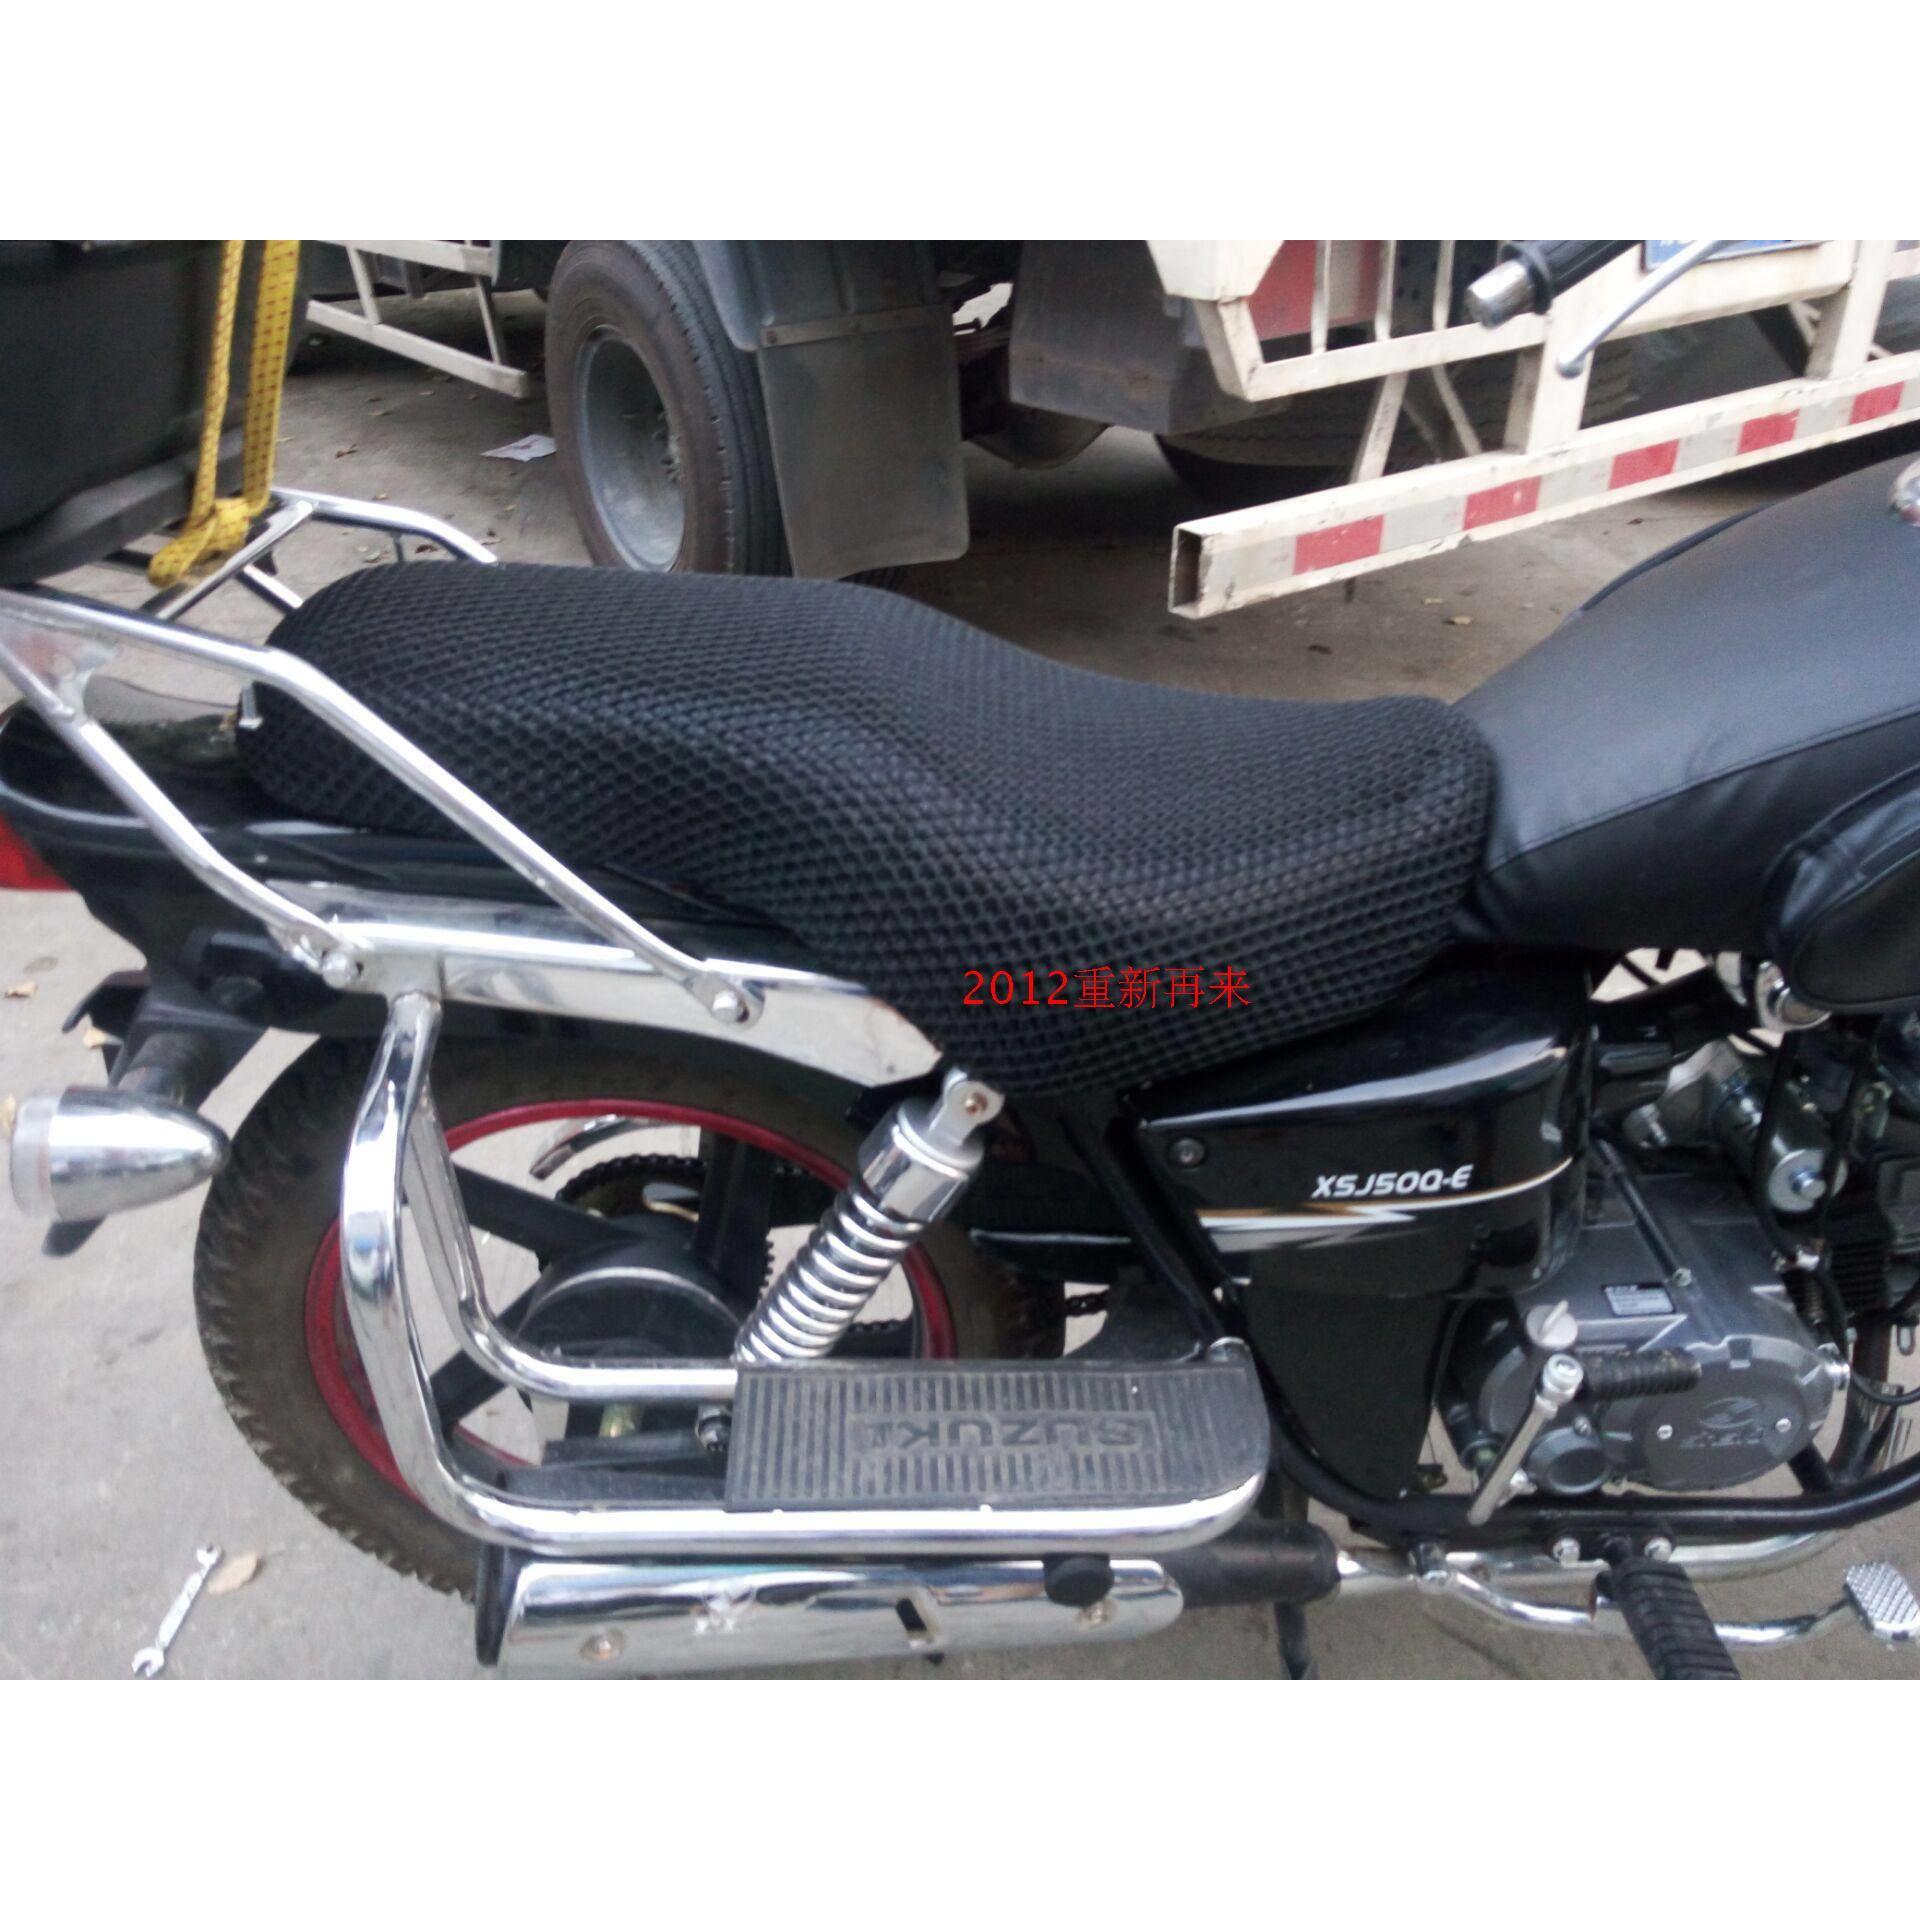 摩托车蜂窝网座套 适用于新/世纪XSJ50Q-E防晒坐垫套隔热透气座套